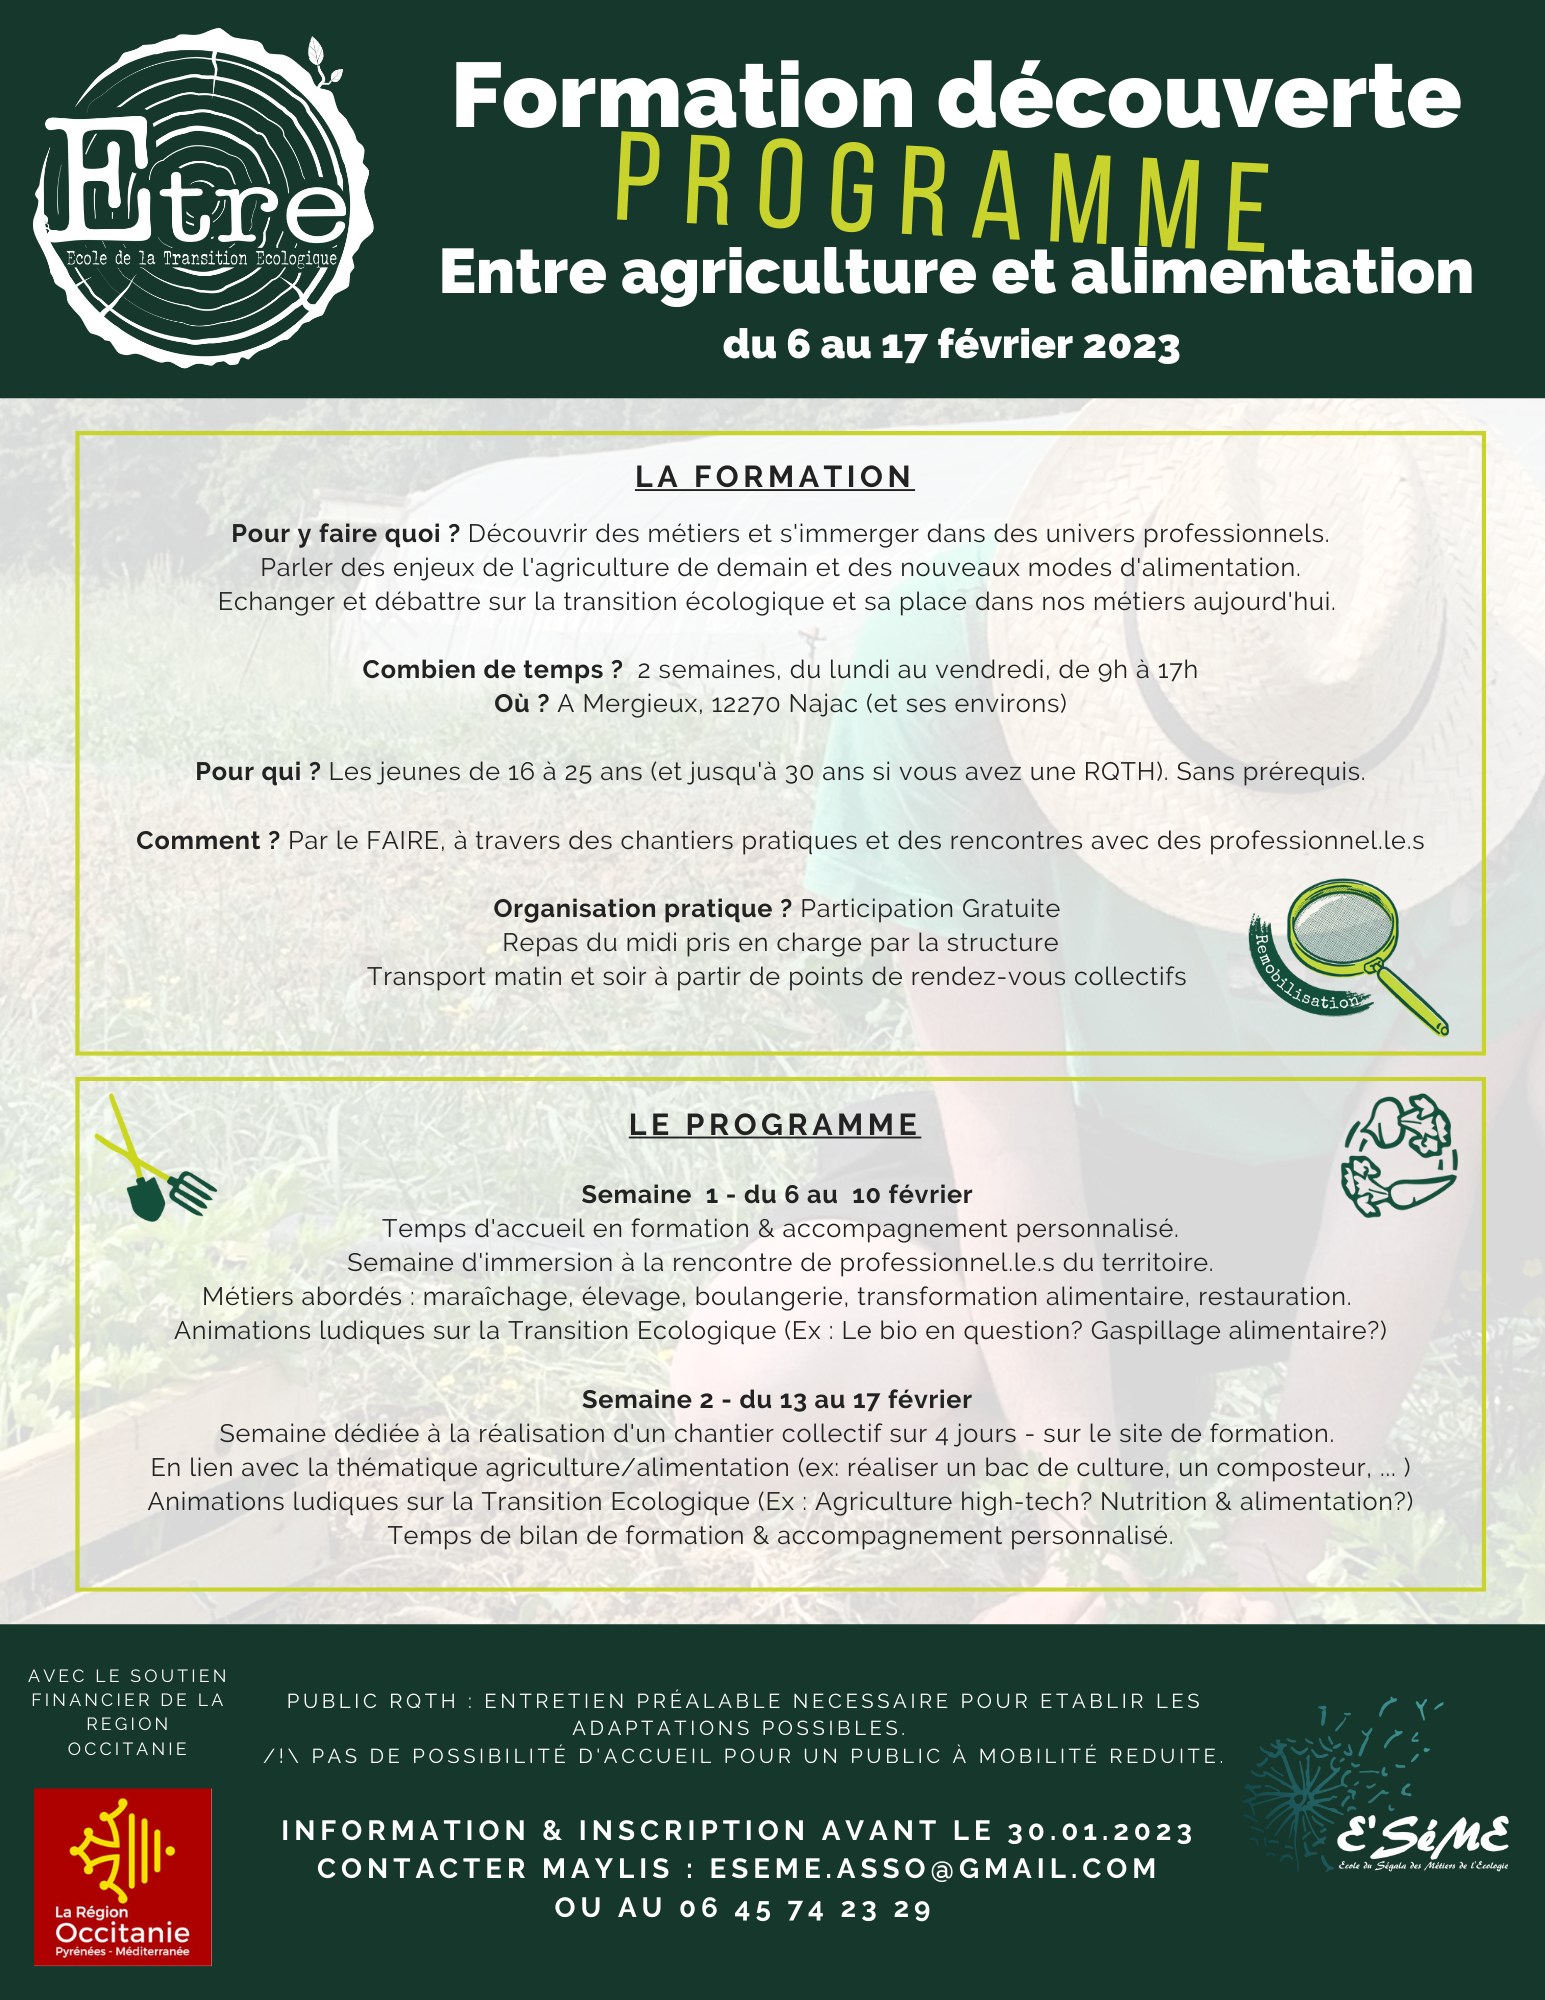 Première Formation Découverte 2023 : Entre Agriculture et Alimentation !